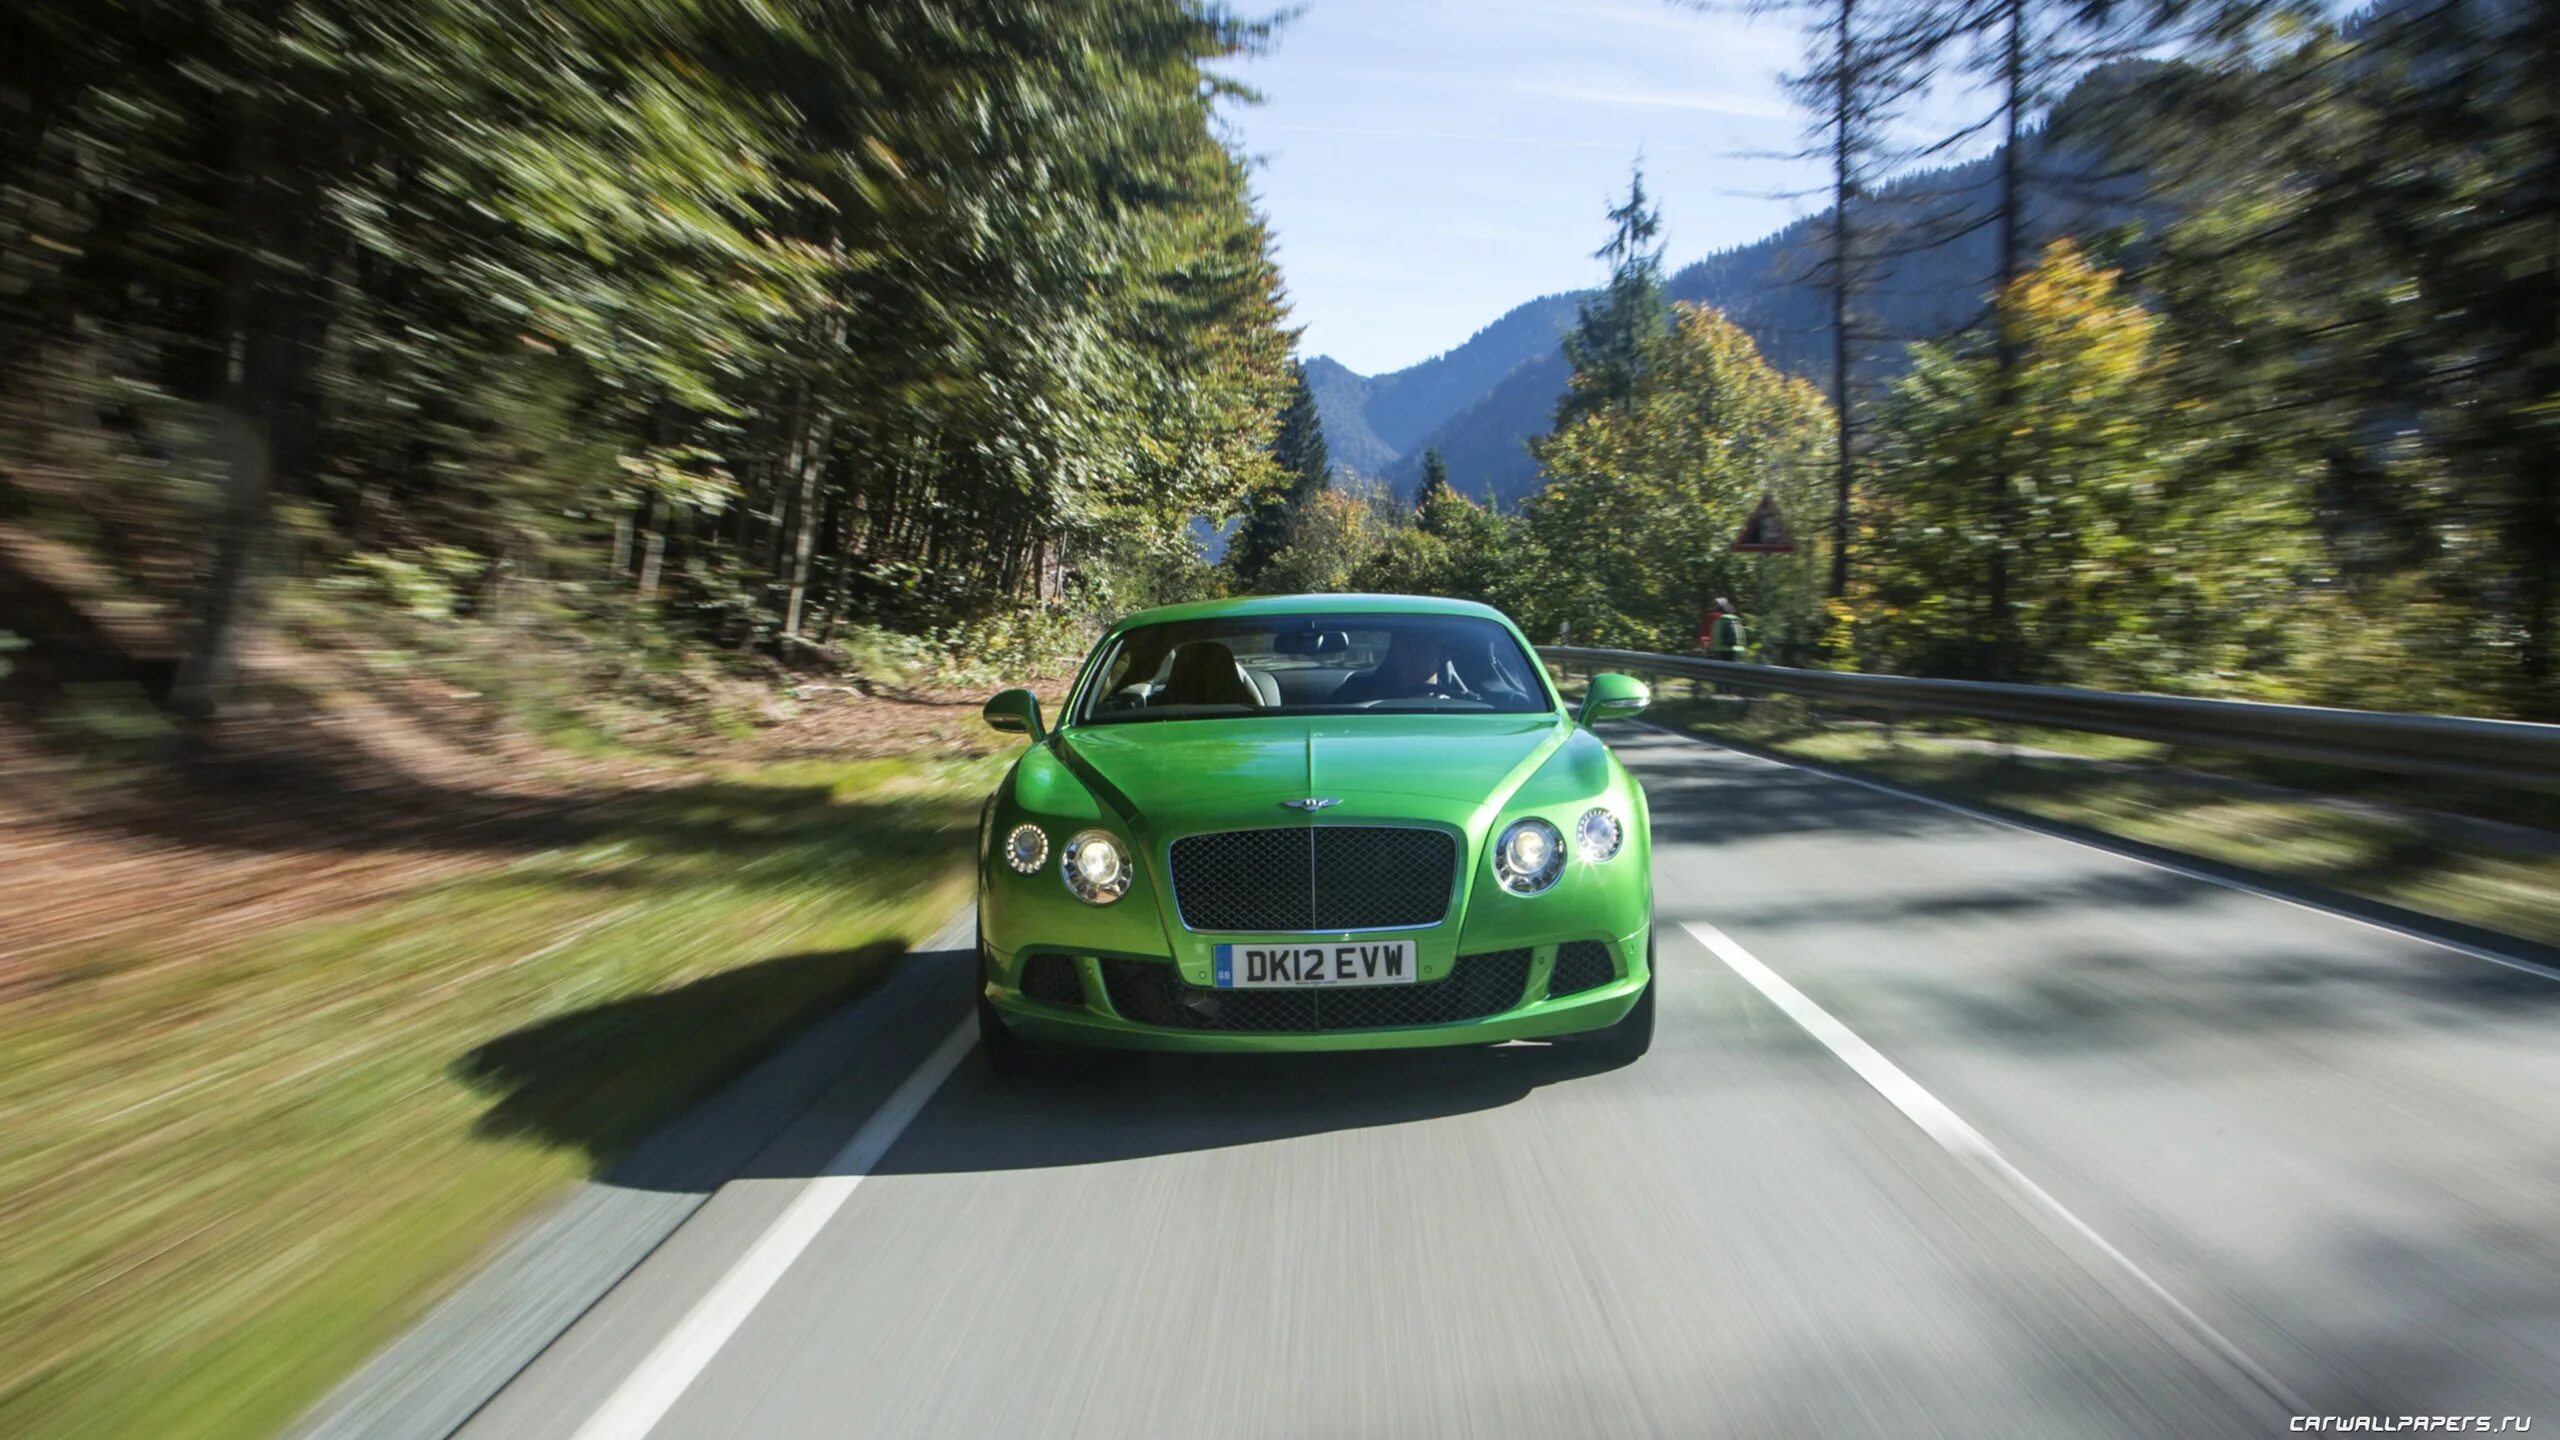 Зеленый автомобиль на дороге. Bentley Continental gt Apple Green. Шоссе с машинами. Машина зеленая без марки на дороге. Машина на скорости фото.